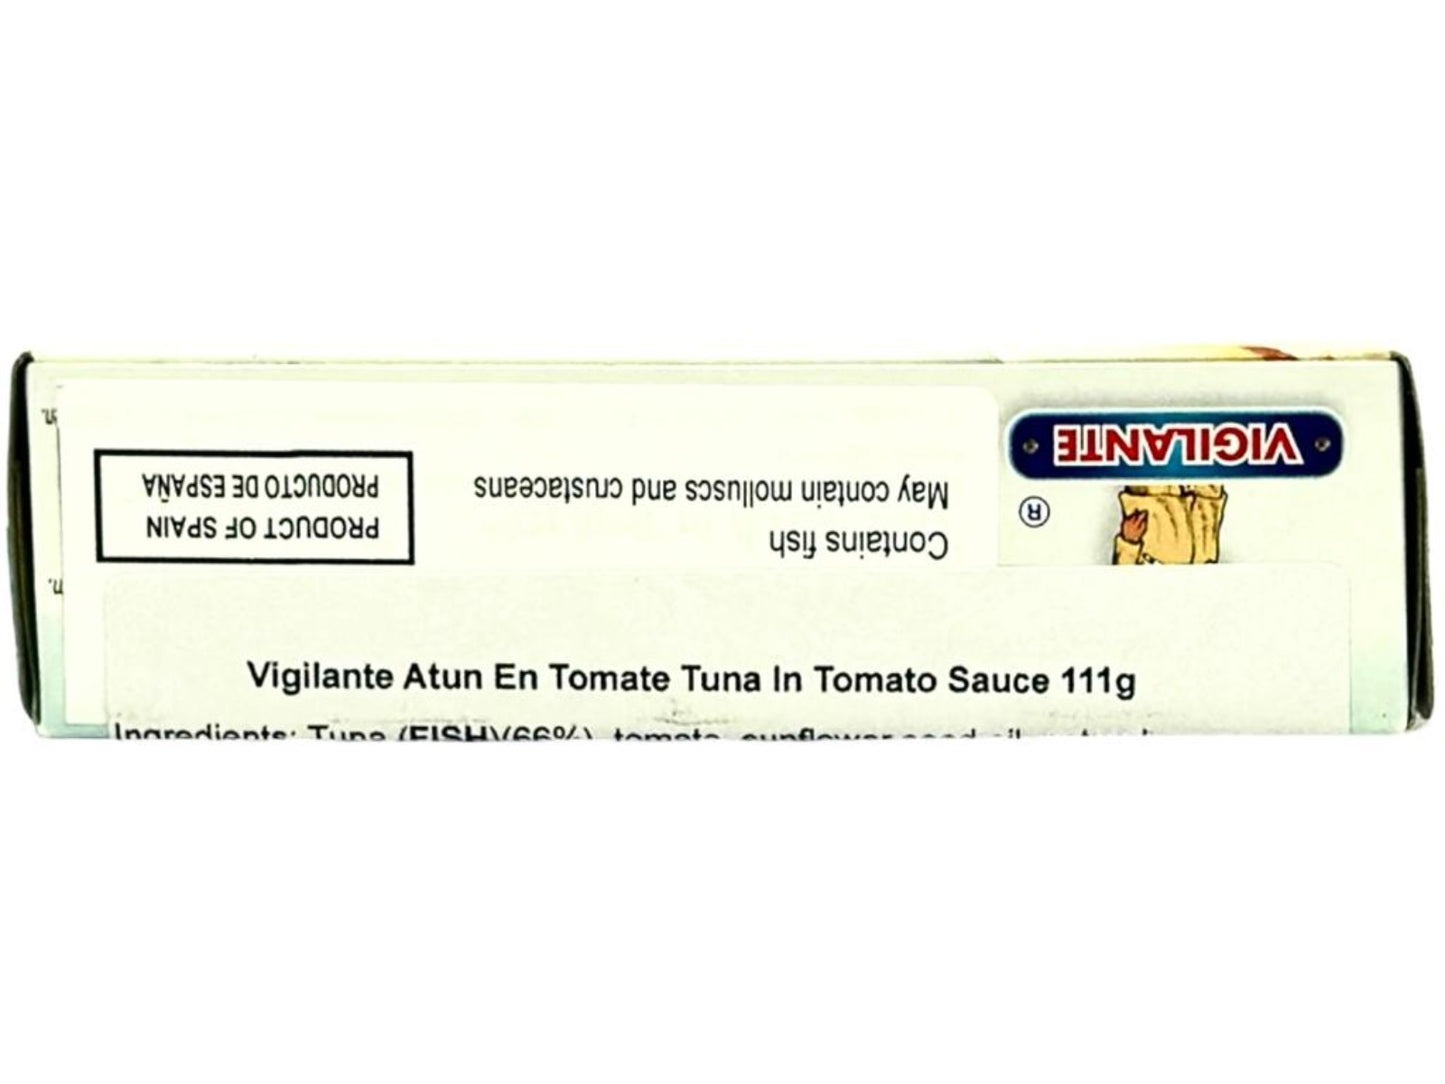 Vigilante Atun en Tomate - Tuna in Tomato Sauce 111g